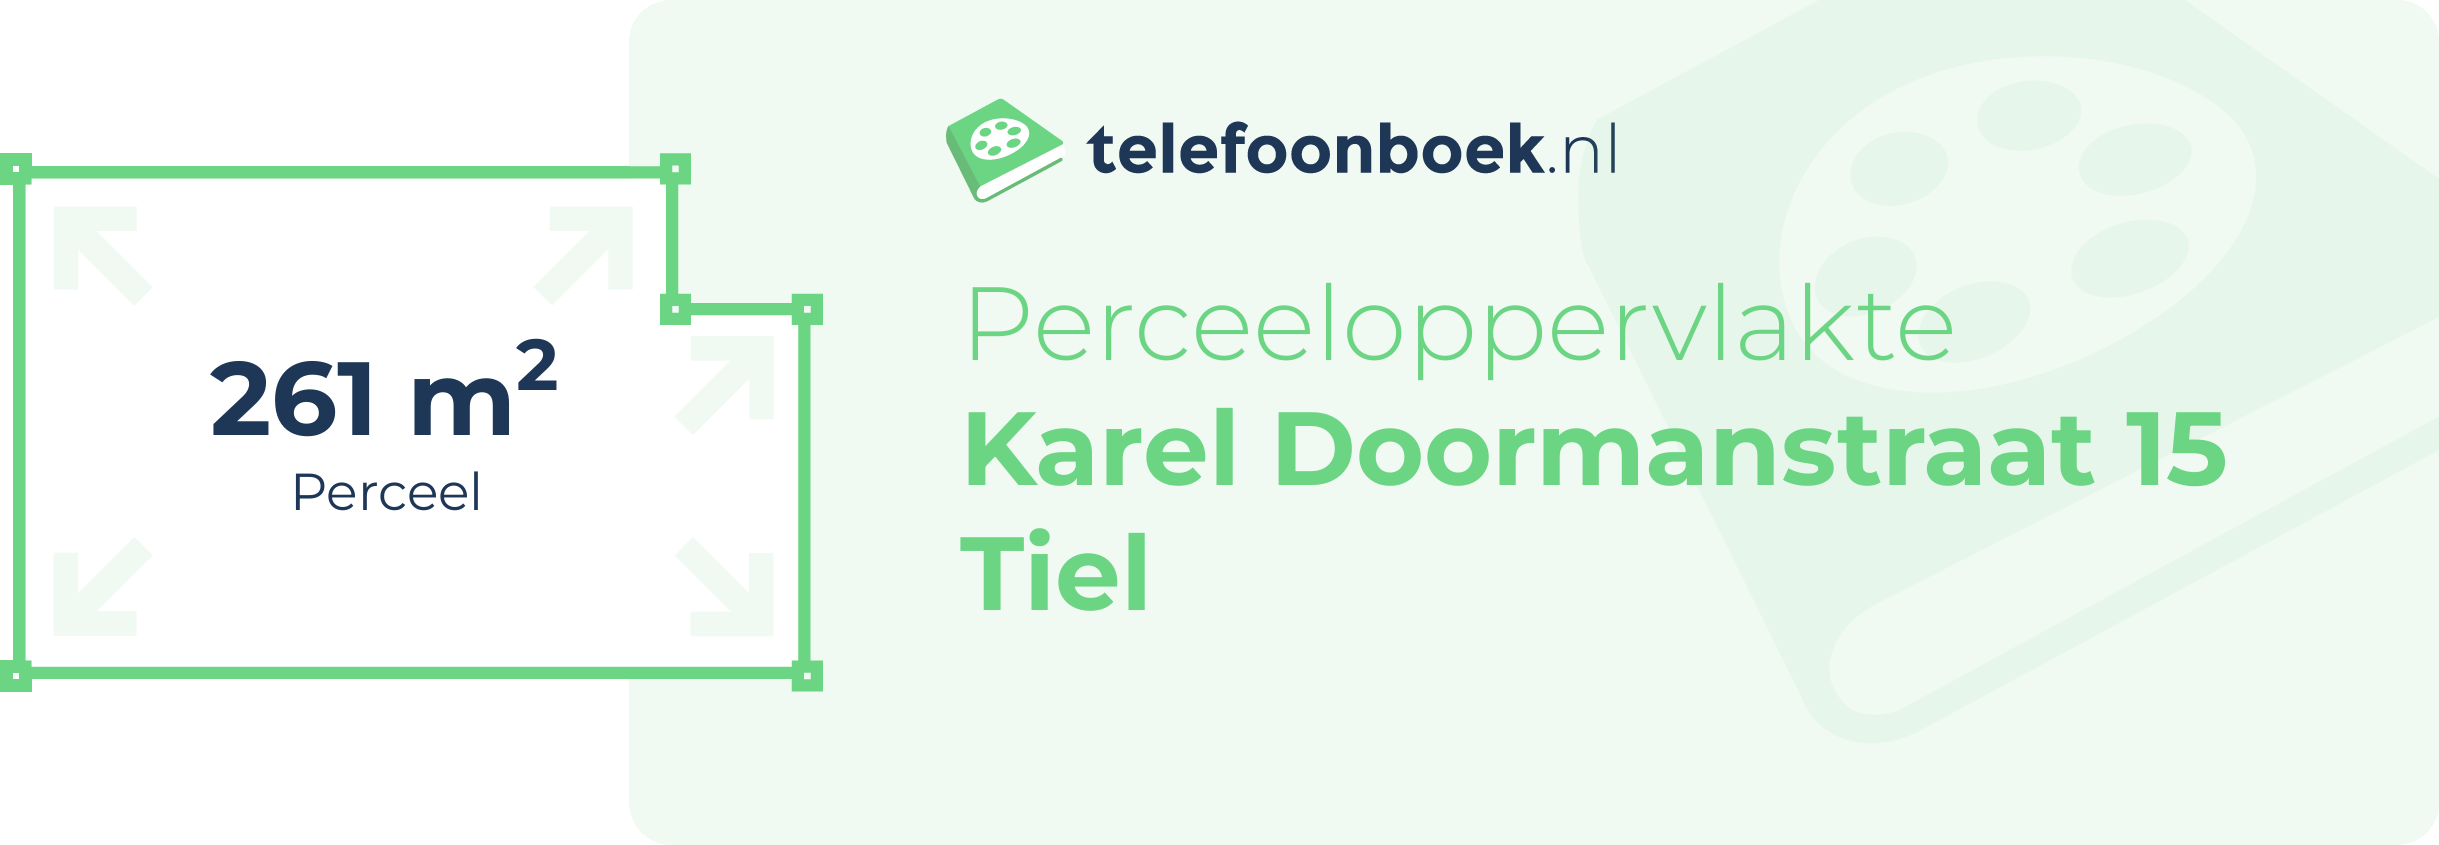 Perceeloppervlakte Karel Doormanstraat 15 Tiel